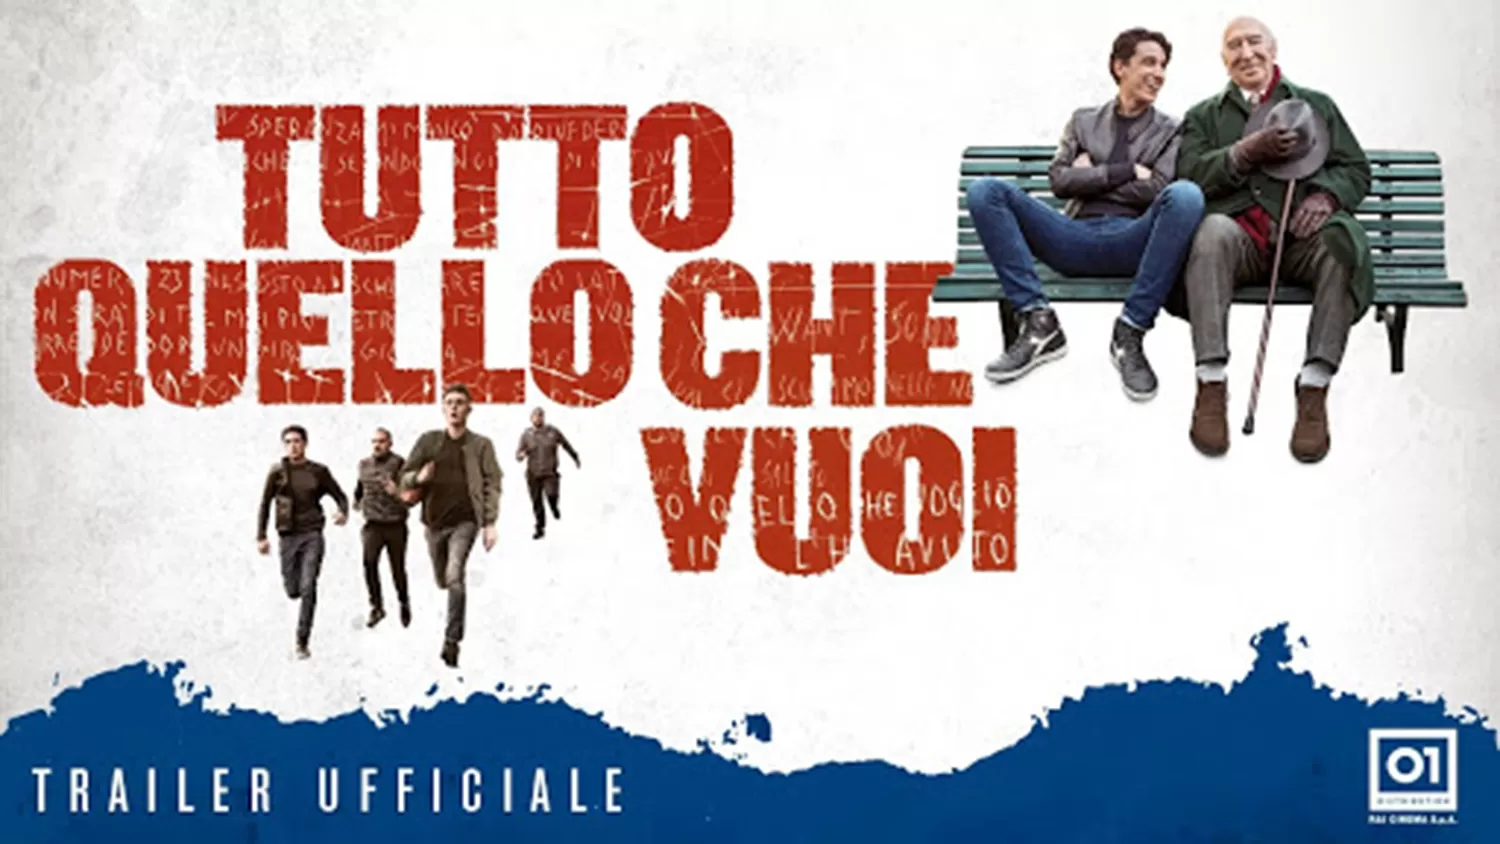 Cine italiano: cuatro películas, disponibles gratis